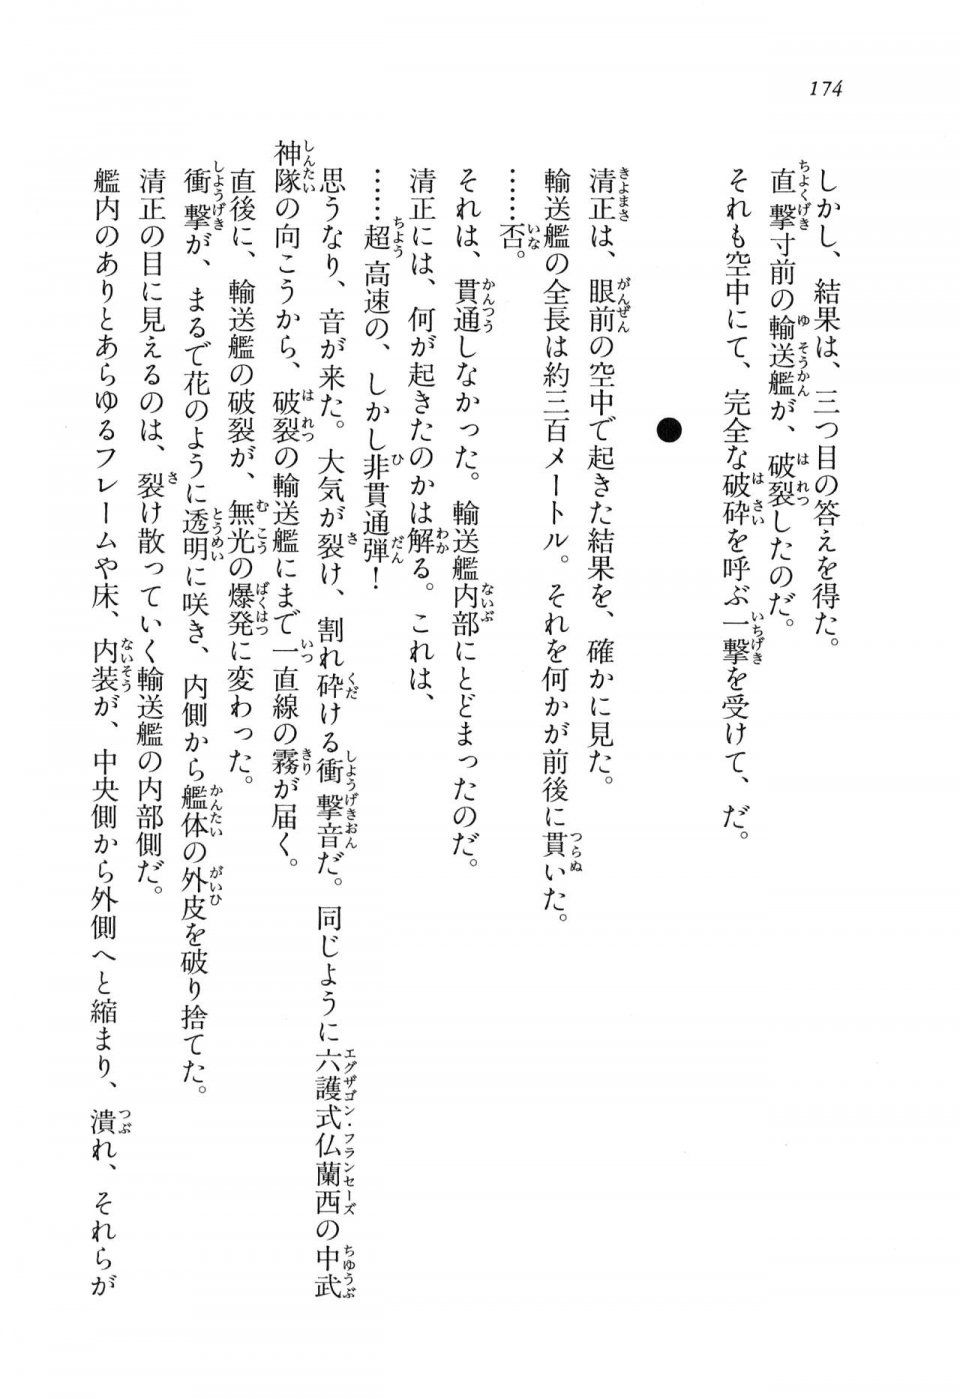 Kyoukai Senjou no Horizon LN Vol 11(5A) - Photo #174